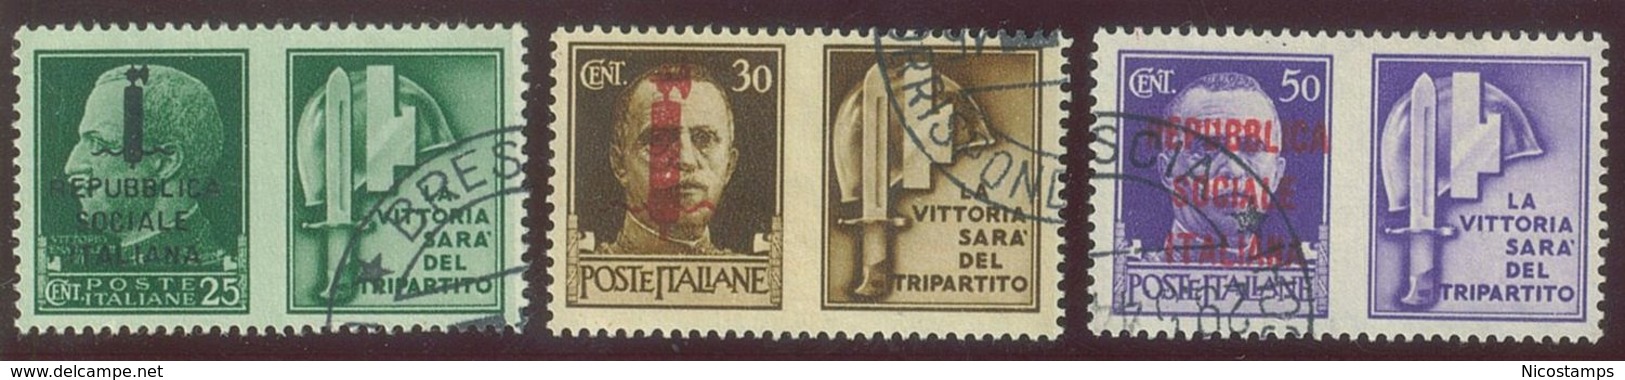 ITALIA REPUBBLICA SOCIALE ITALIANA (R.S.I.) SASS. P.G. 25 - 36 USATI - Propaganda Di Guerra